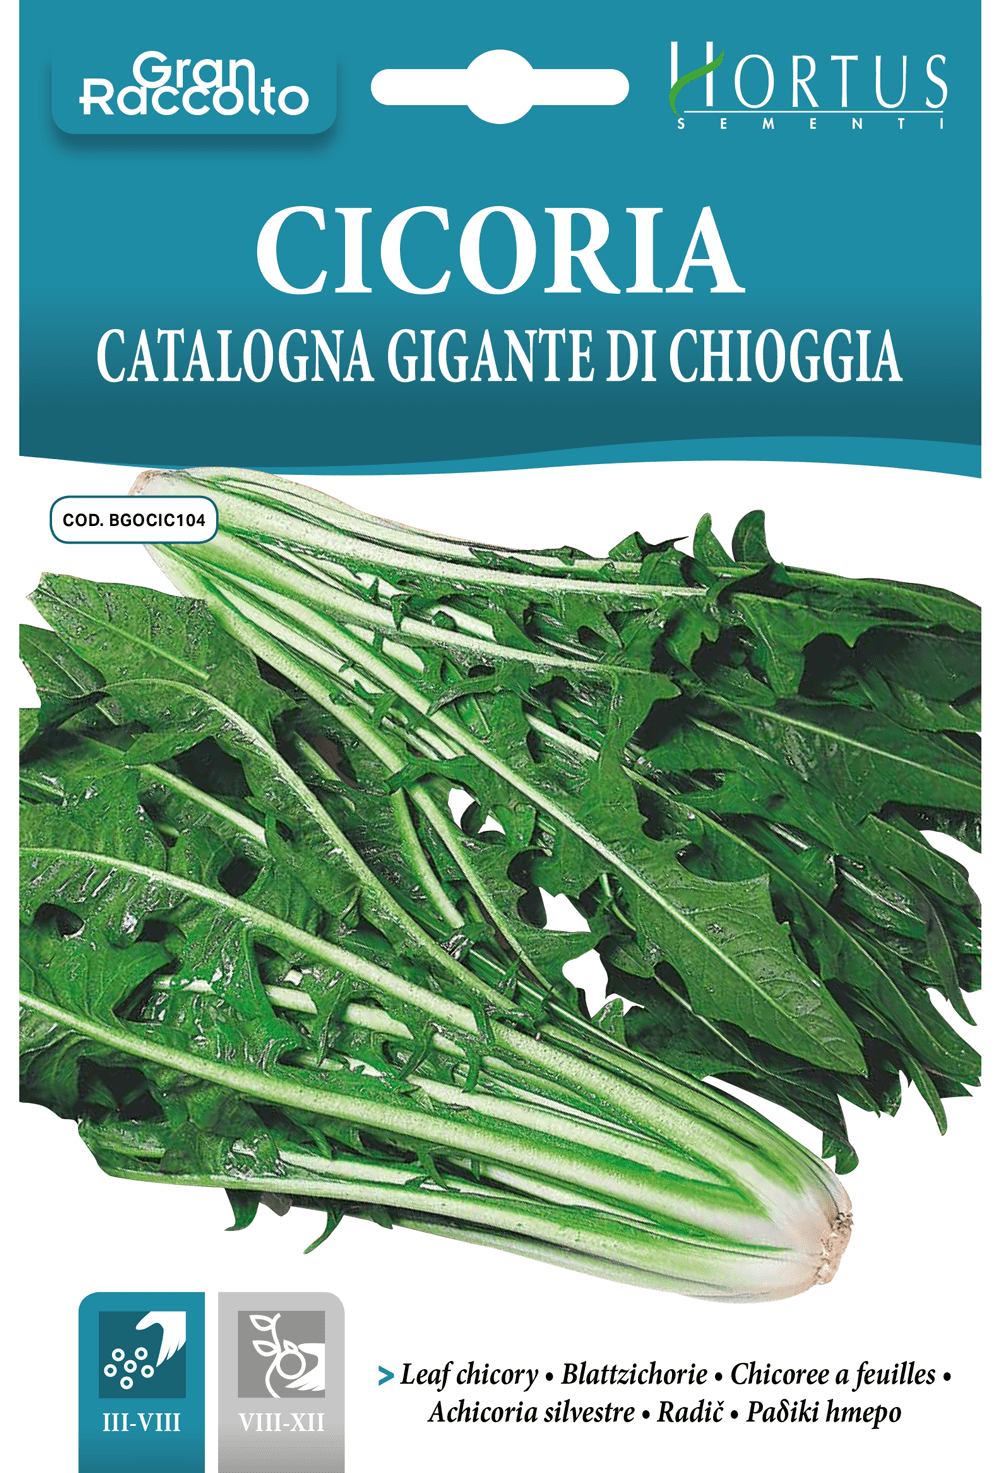 Chicorée Catalogne Géante de Chioggia